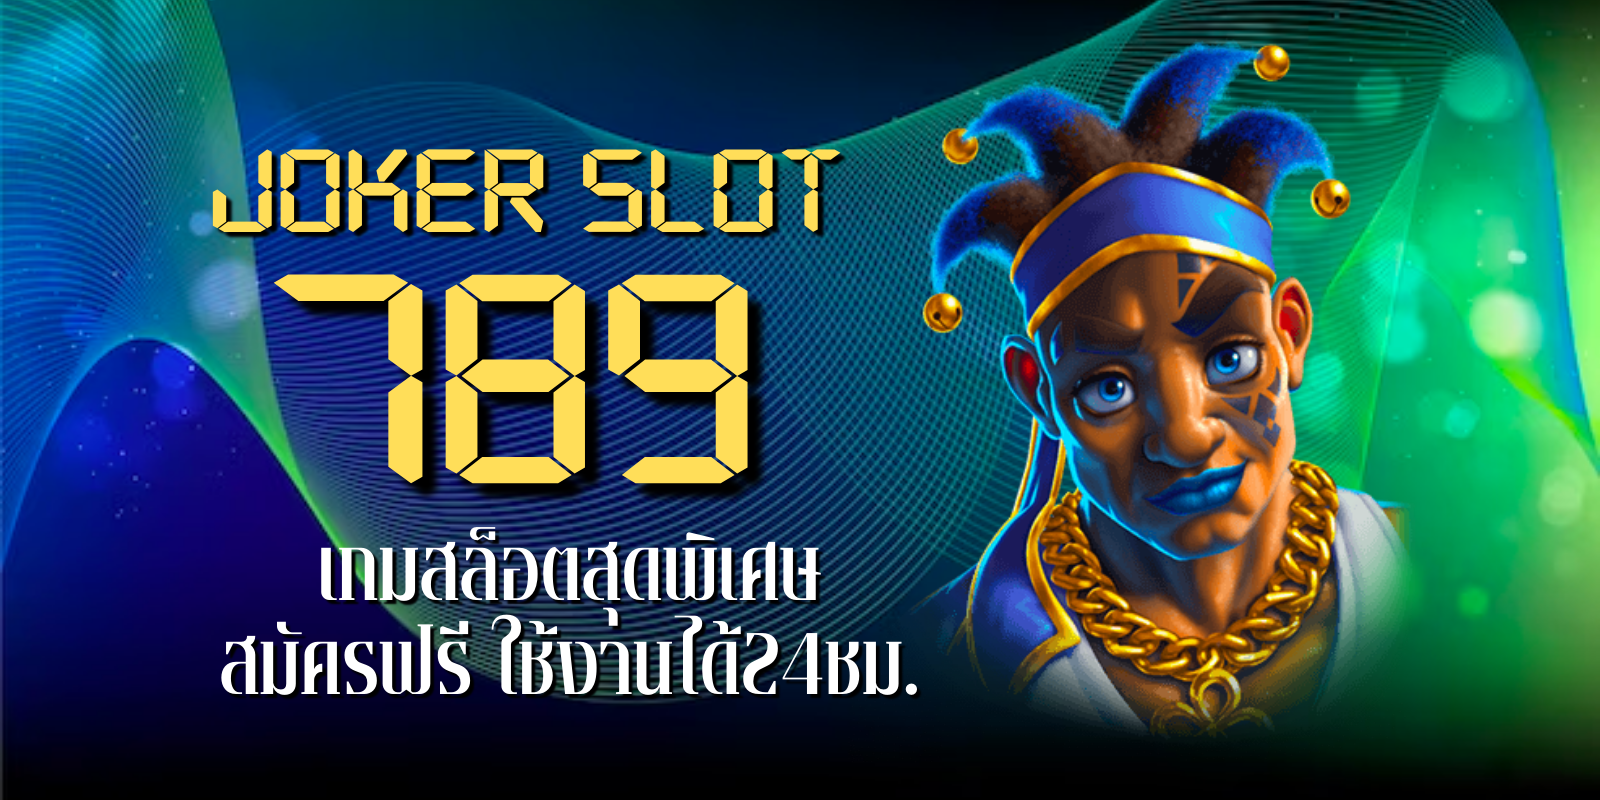 joker slot 789 เกมสล็อตสุดพิเศษ สมัครฟรี ใช้งานได้24ชม.